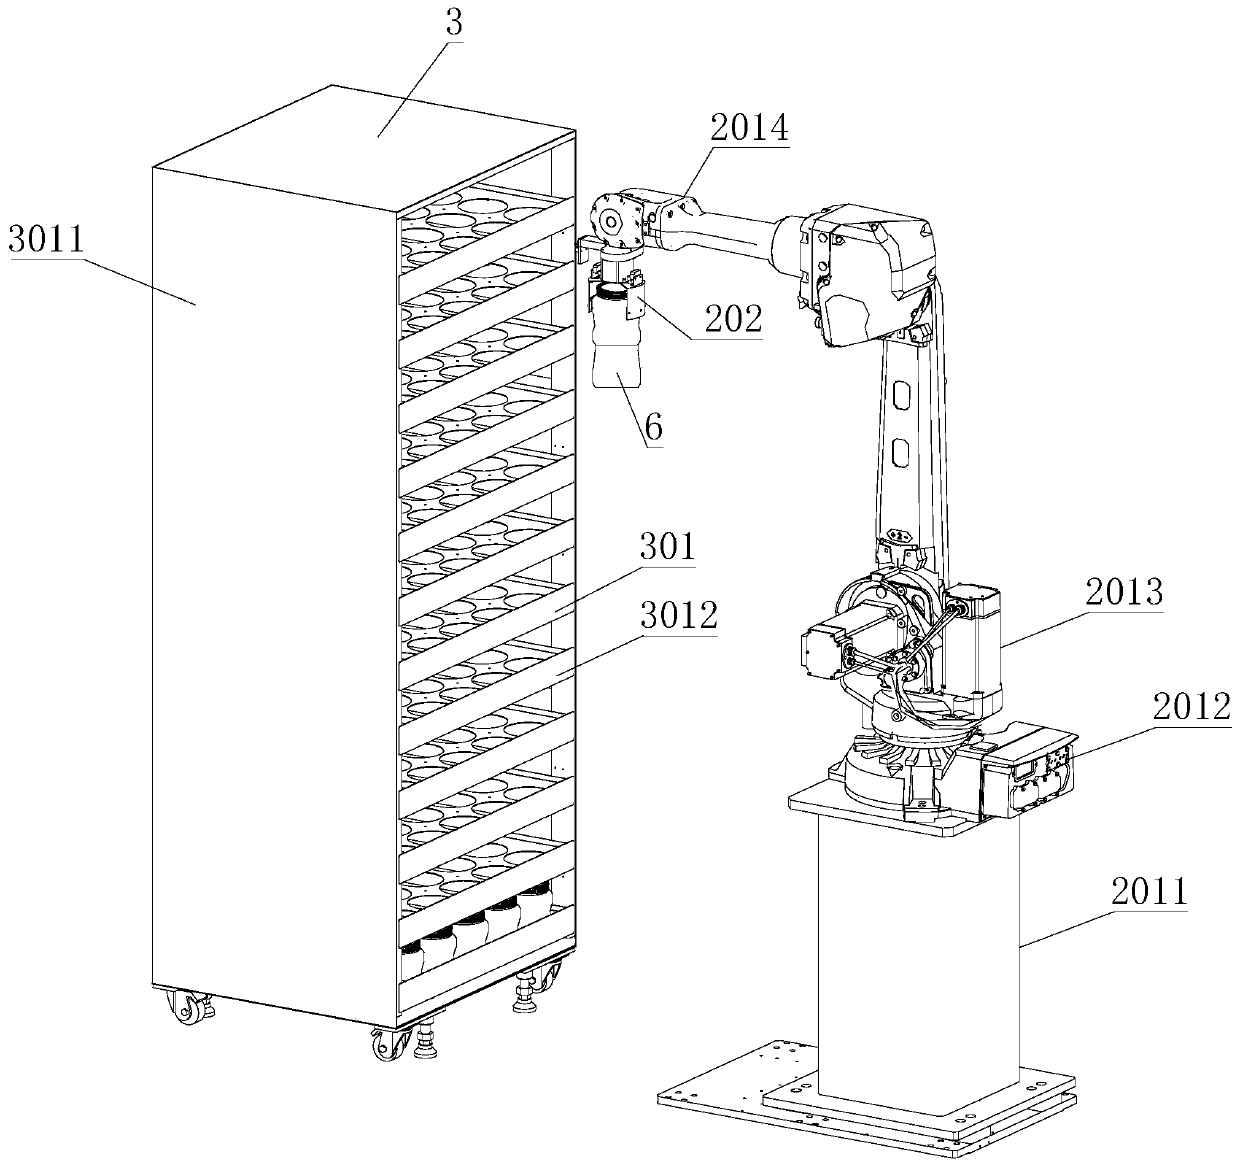 Robot sample storage cabinet system